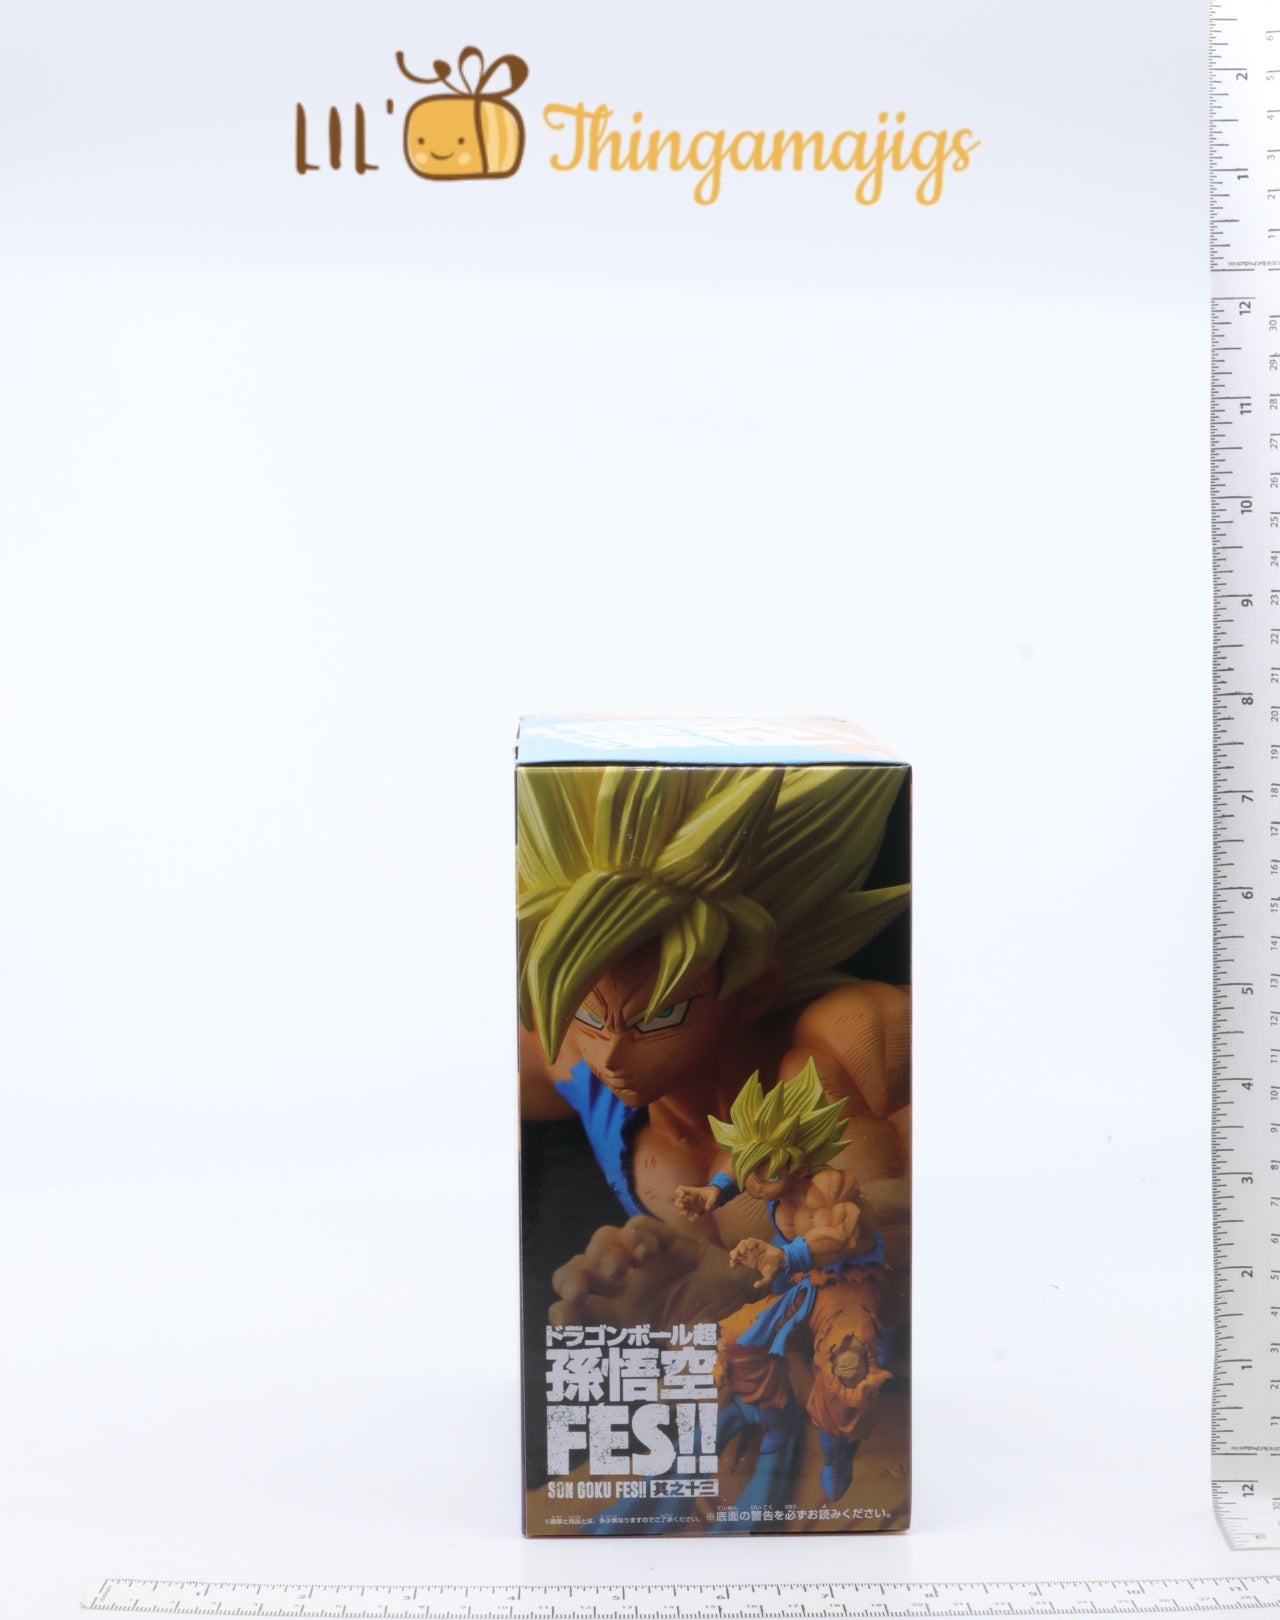 Goku SSJ4 vs Goku SSJ Blue - Fan Animation (By Studio B Animation